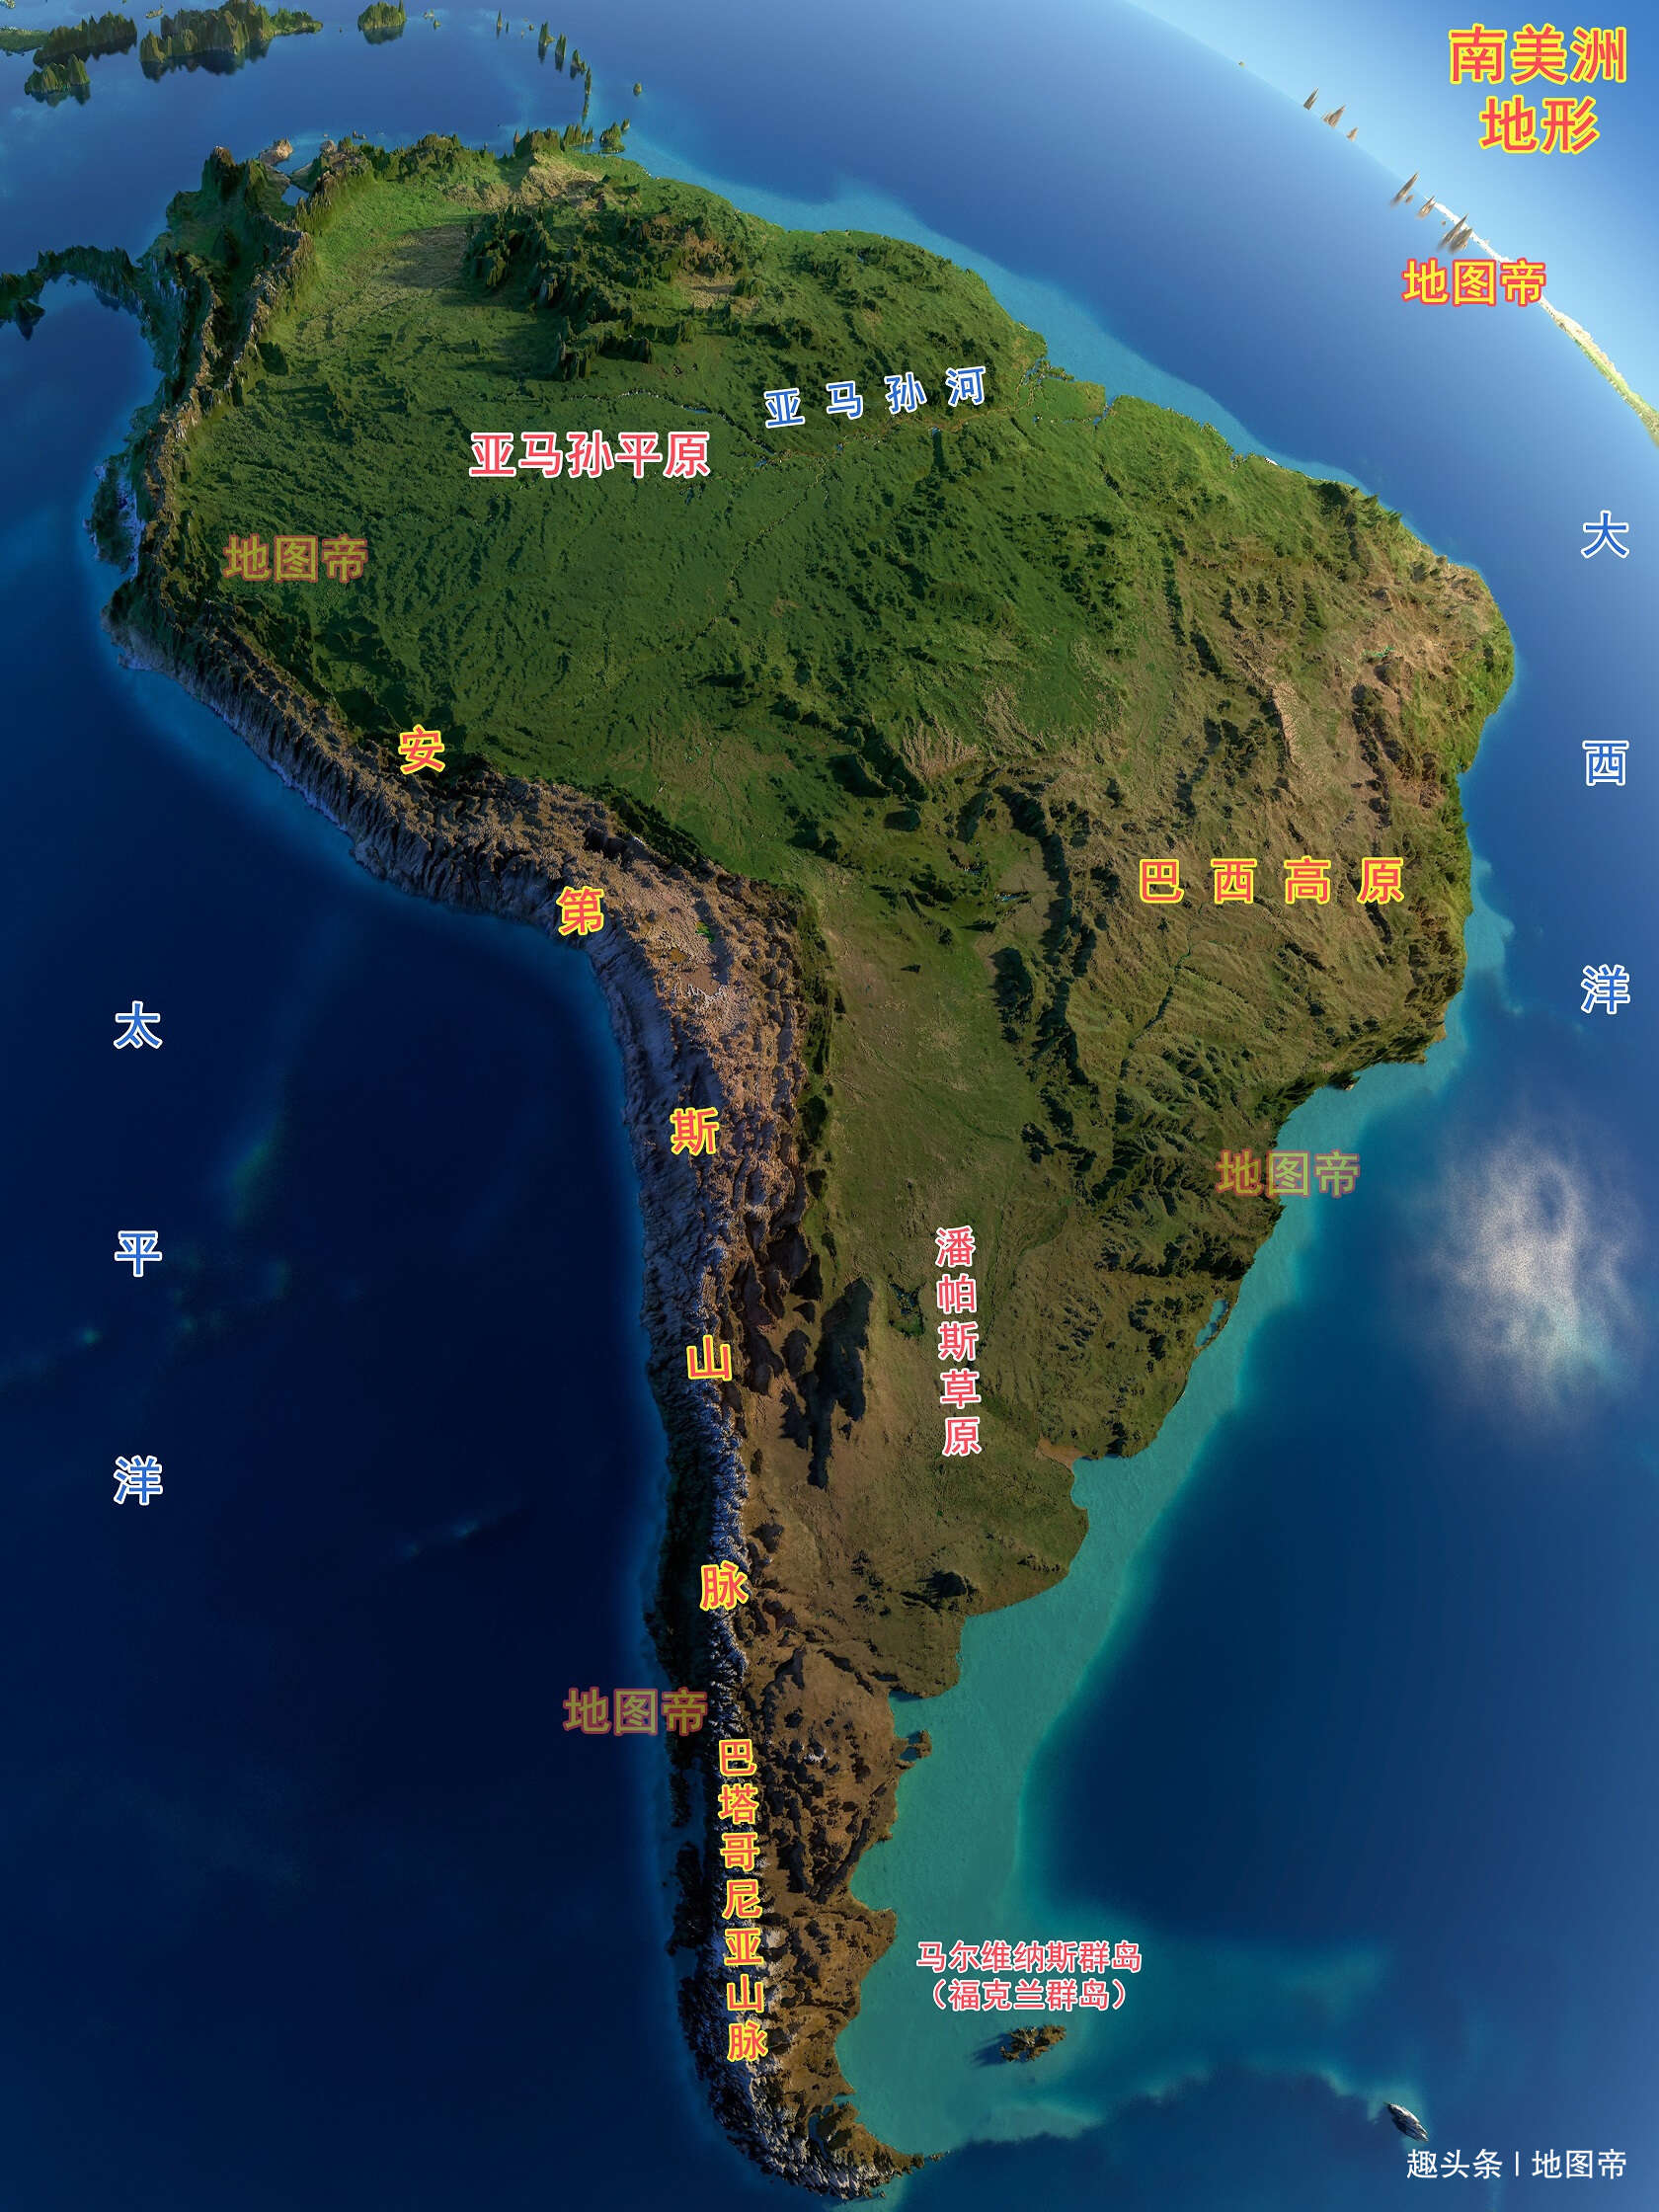 南美洲的平原面积巨大 为什么人口这么少 楠木轩